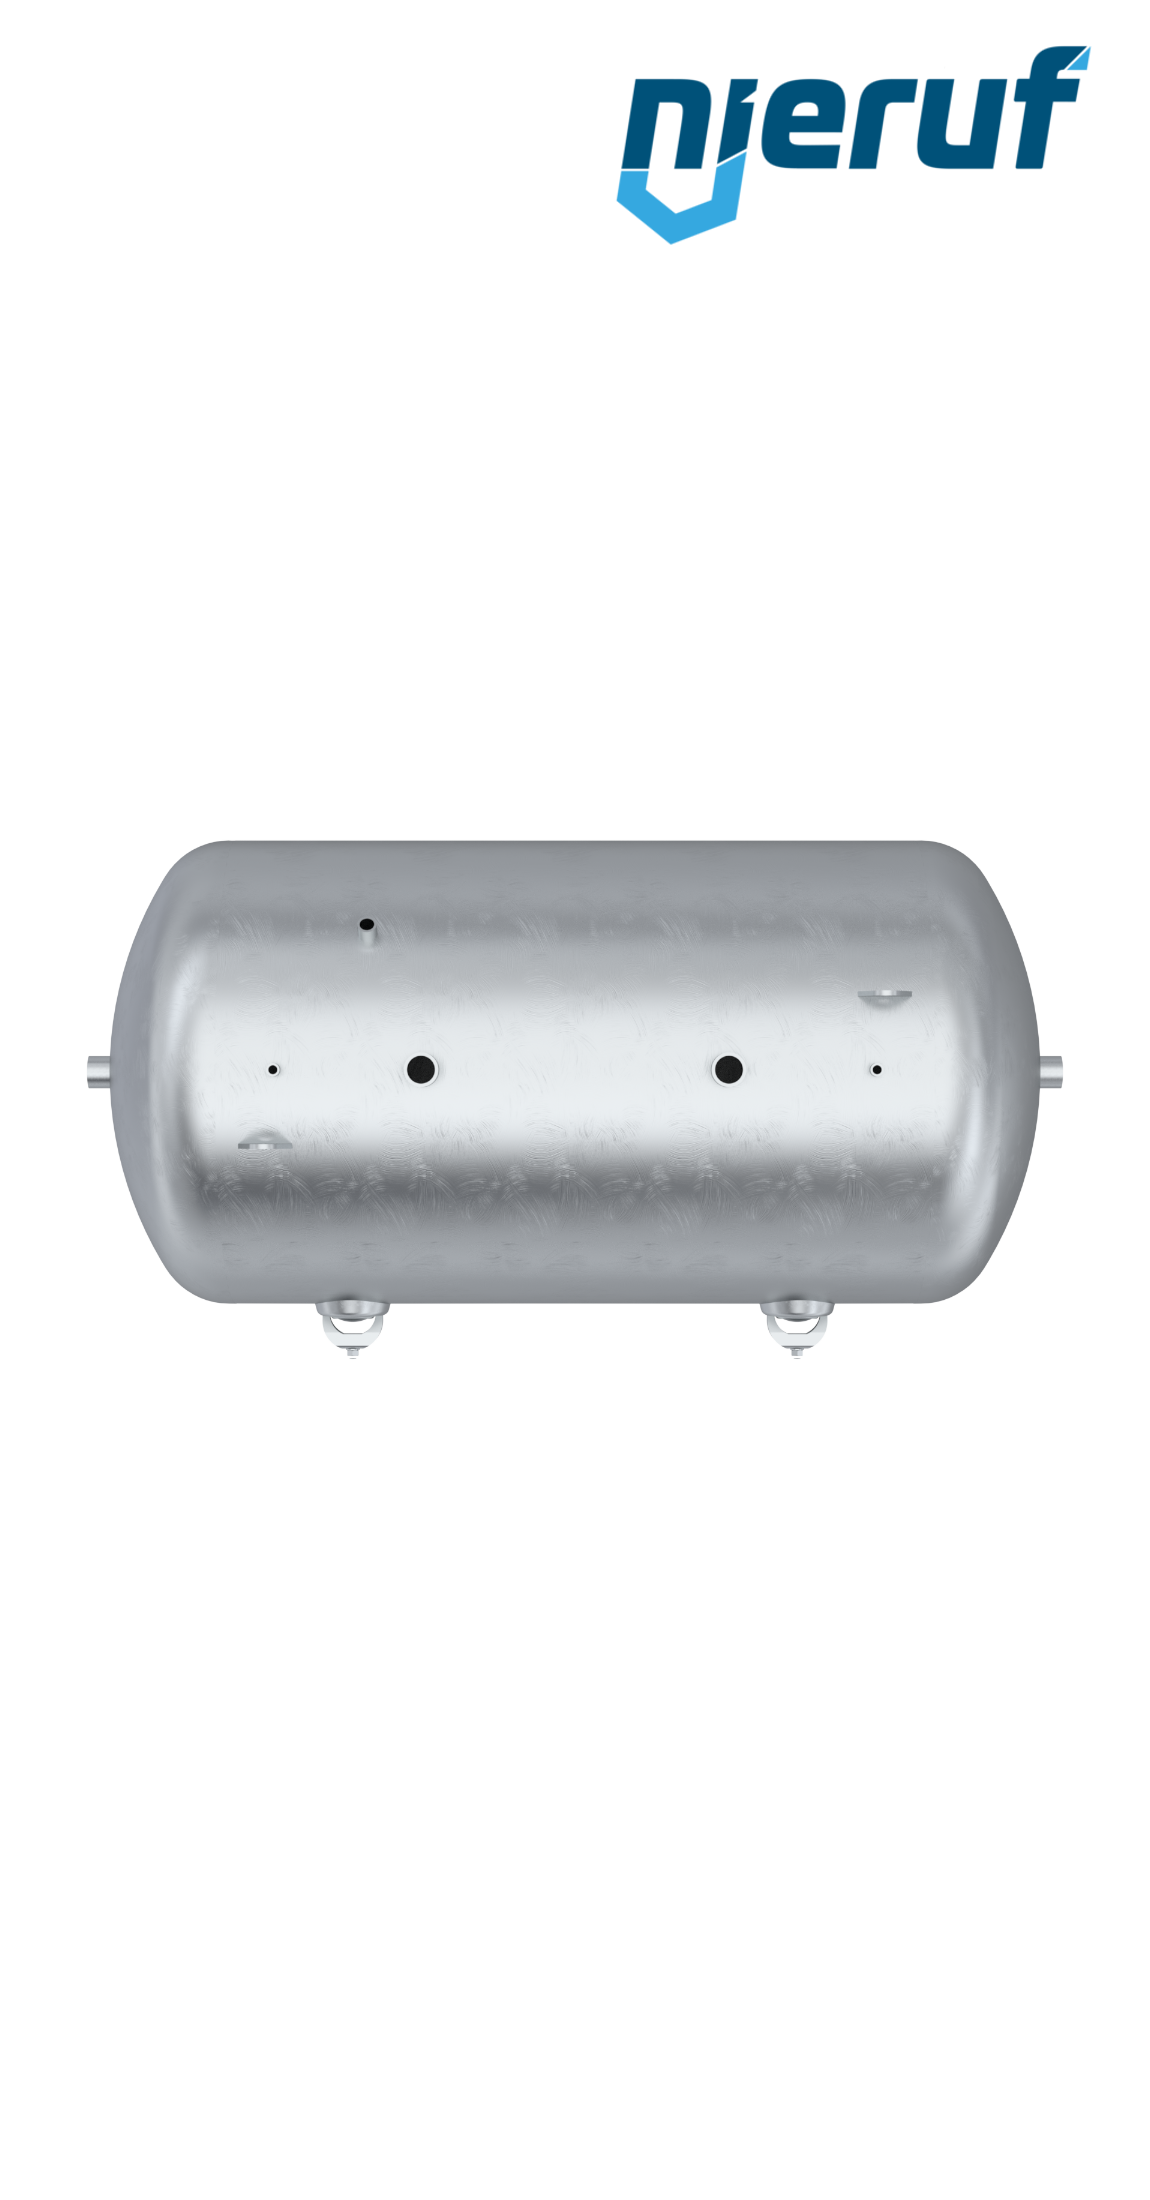 Serbatoio a pressione orizzontale BE01 10000 litri, 0-16 bar, acciaio zincato, diametro 1800 mm